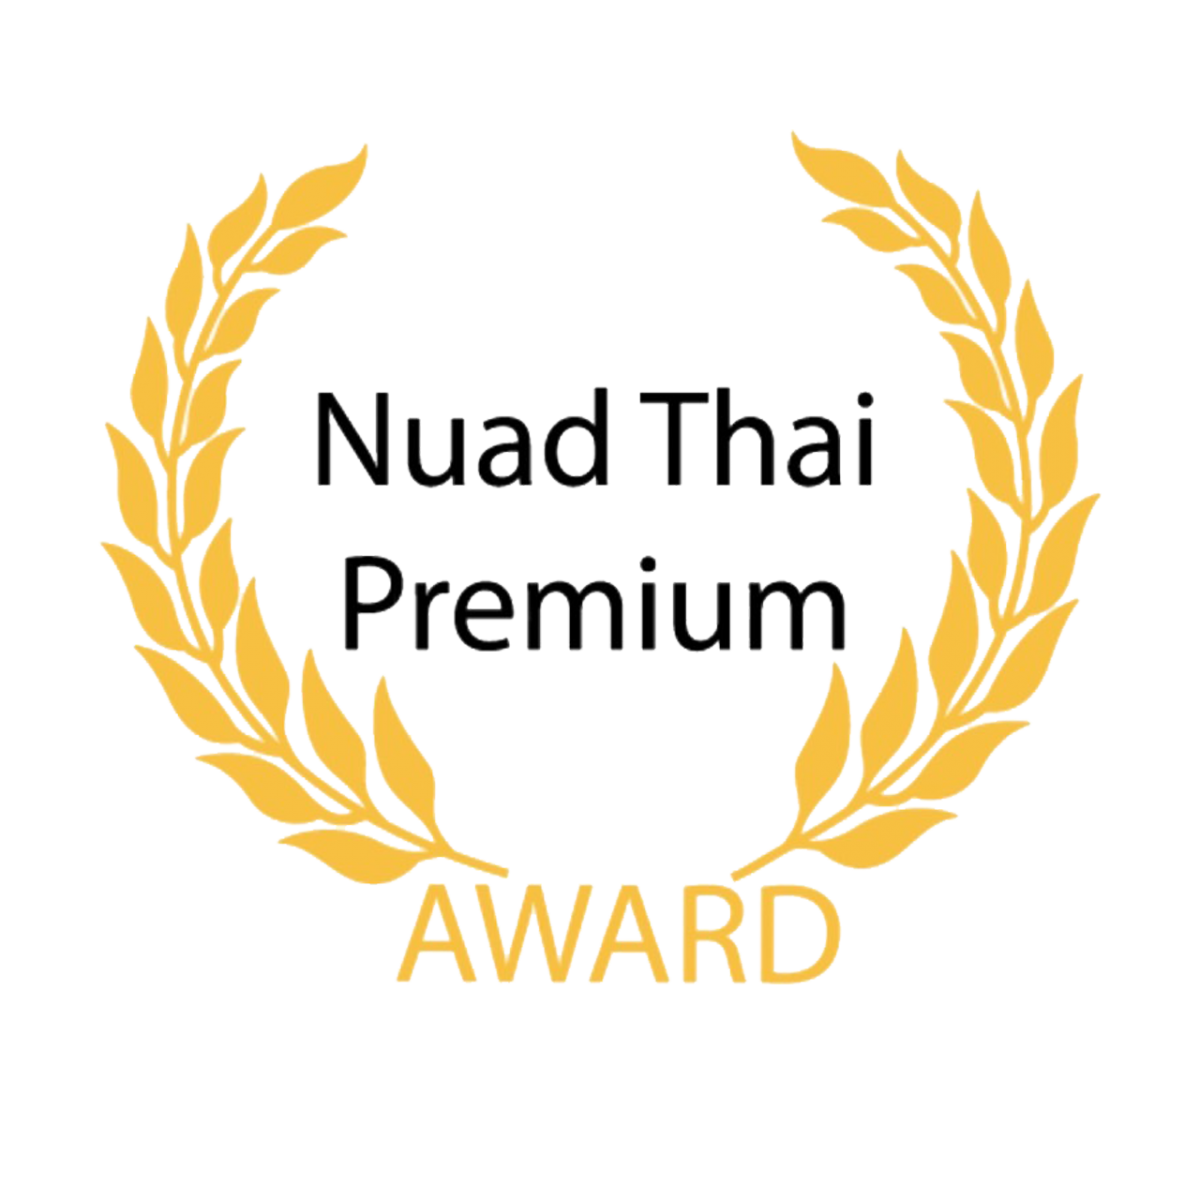 Nuad Thai Premium Award